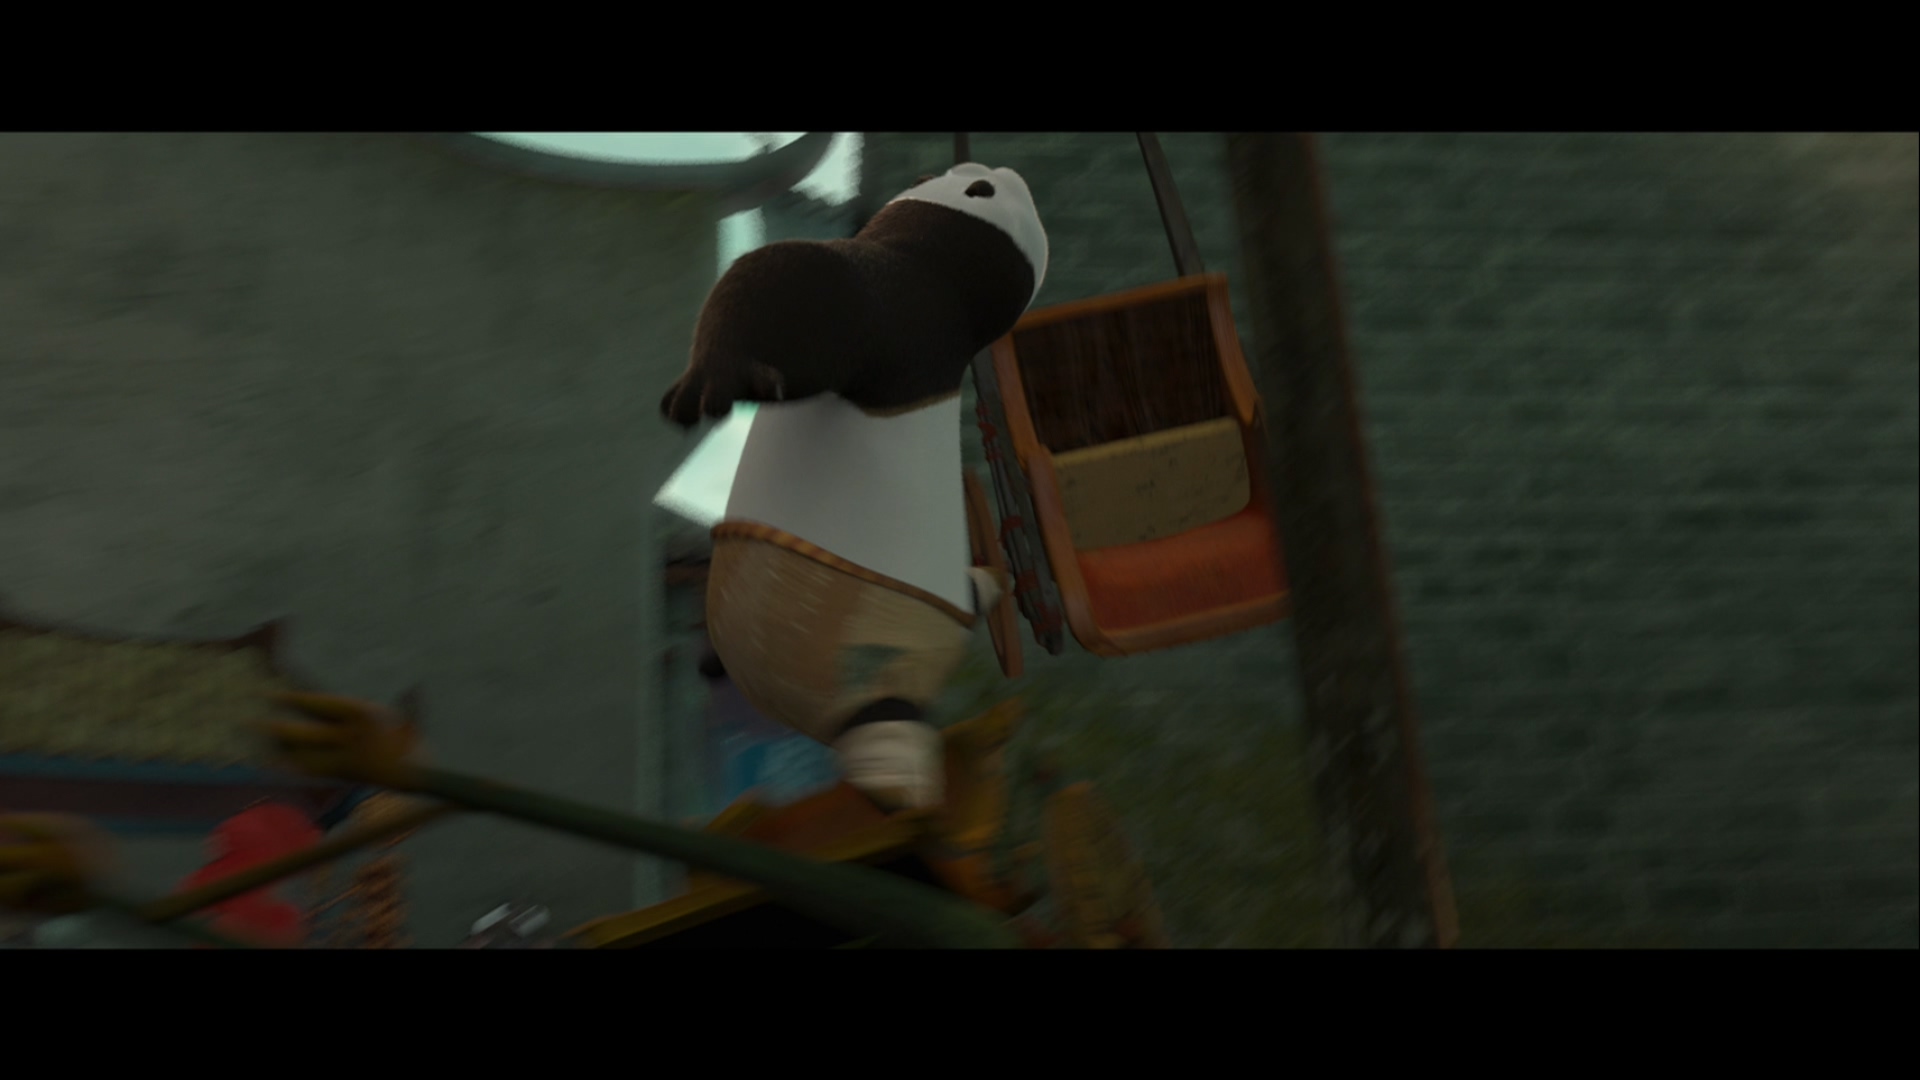 [功夫熊猫2].Kung.Fu.Panda.2.2011.3D.BluRay.1080p.AVC.TrueHD.7.1-LKS   35.53G$  q/ D/ W- f7 C. W0 ~6 s-13.jpg